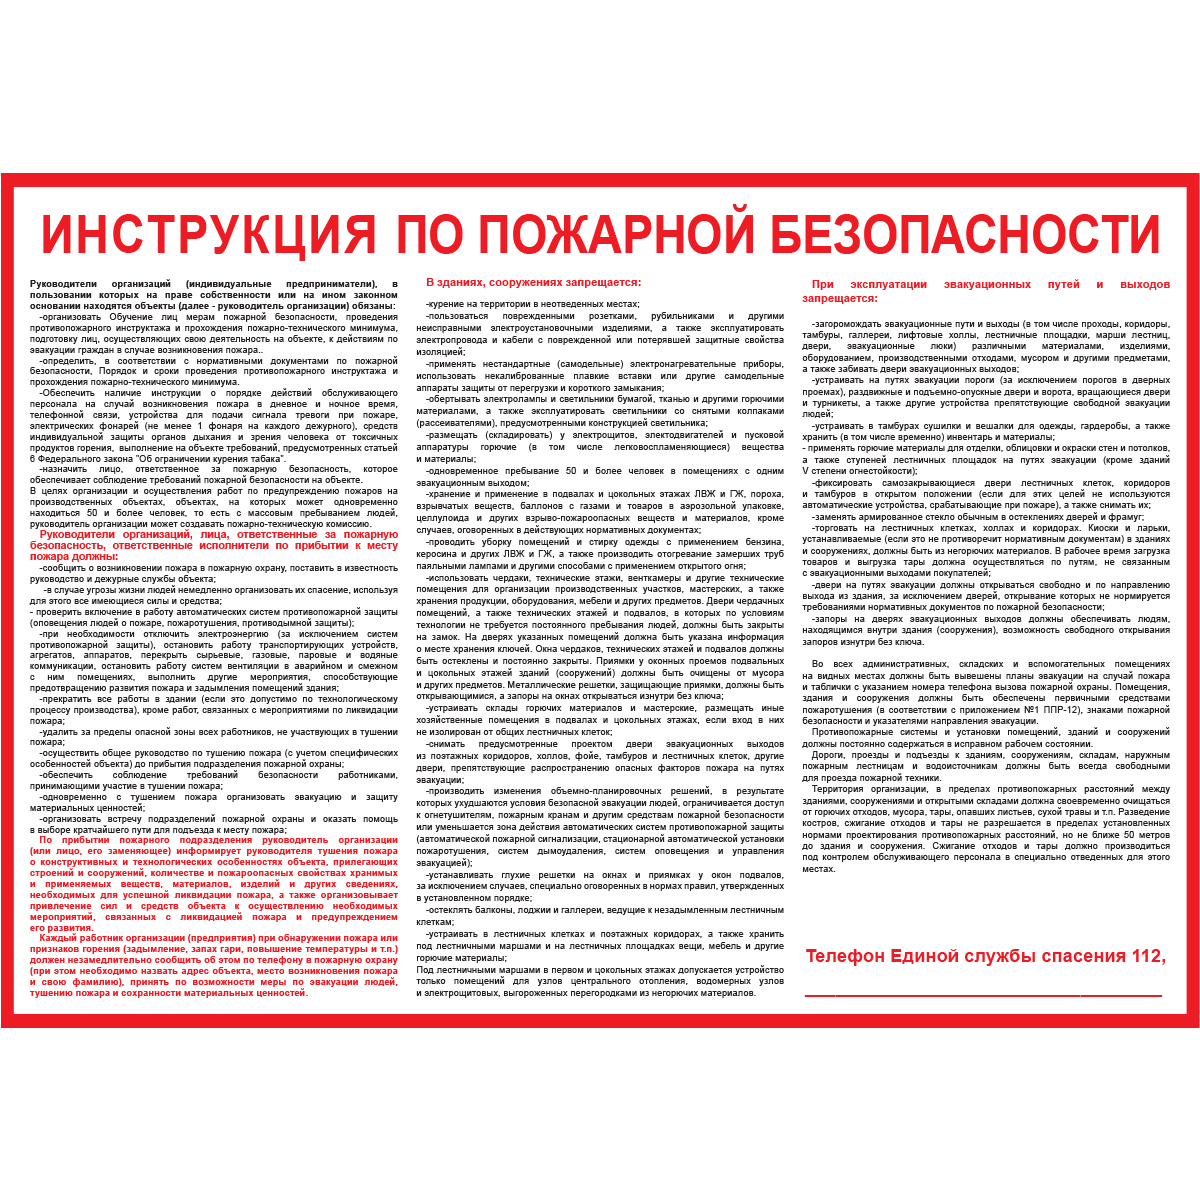 Плакат "Инструкция по пожарной безопасности для общественных зданий" (Пластик 2 мм, 1 л.)